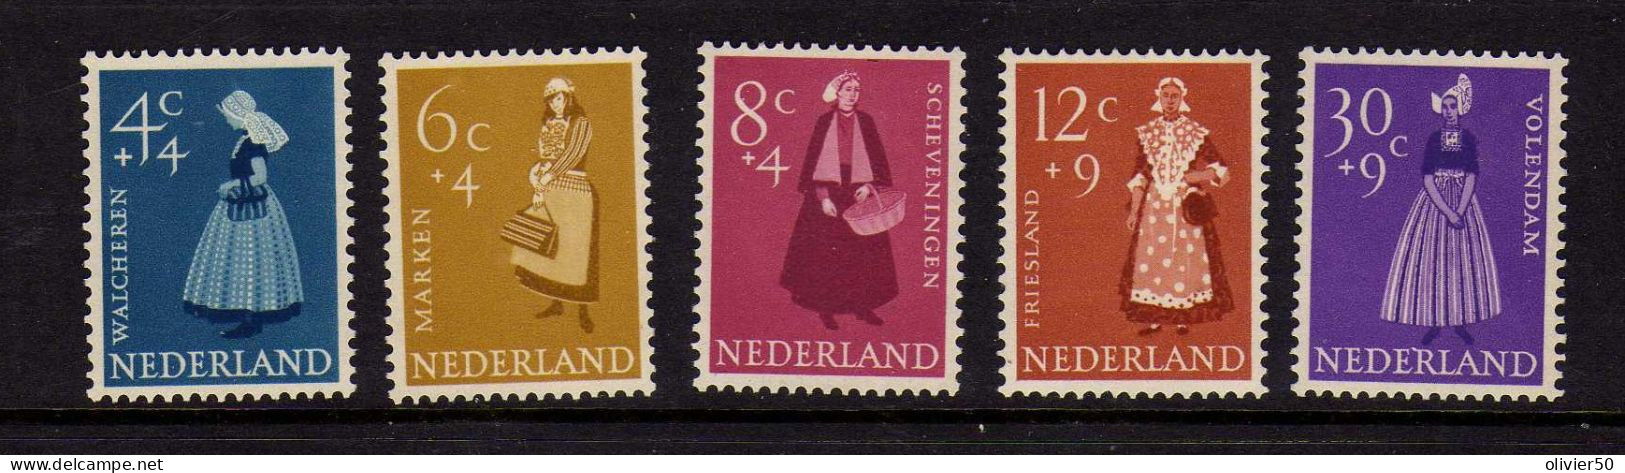 Pays-Bas - 1958 - Costumes - Oeuvres De Bienfaisance - Neufs** - MNH - Nuevos